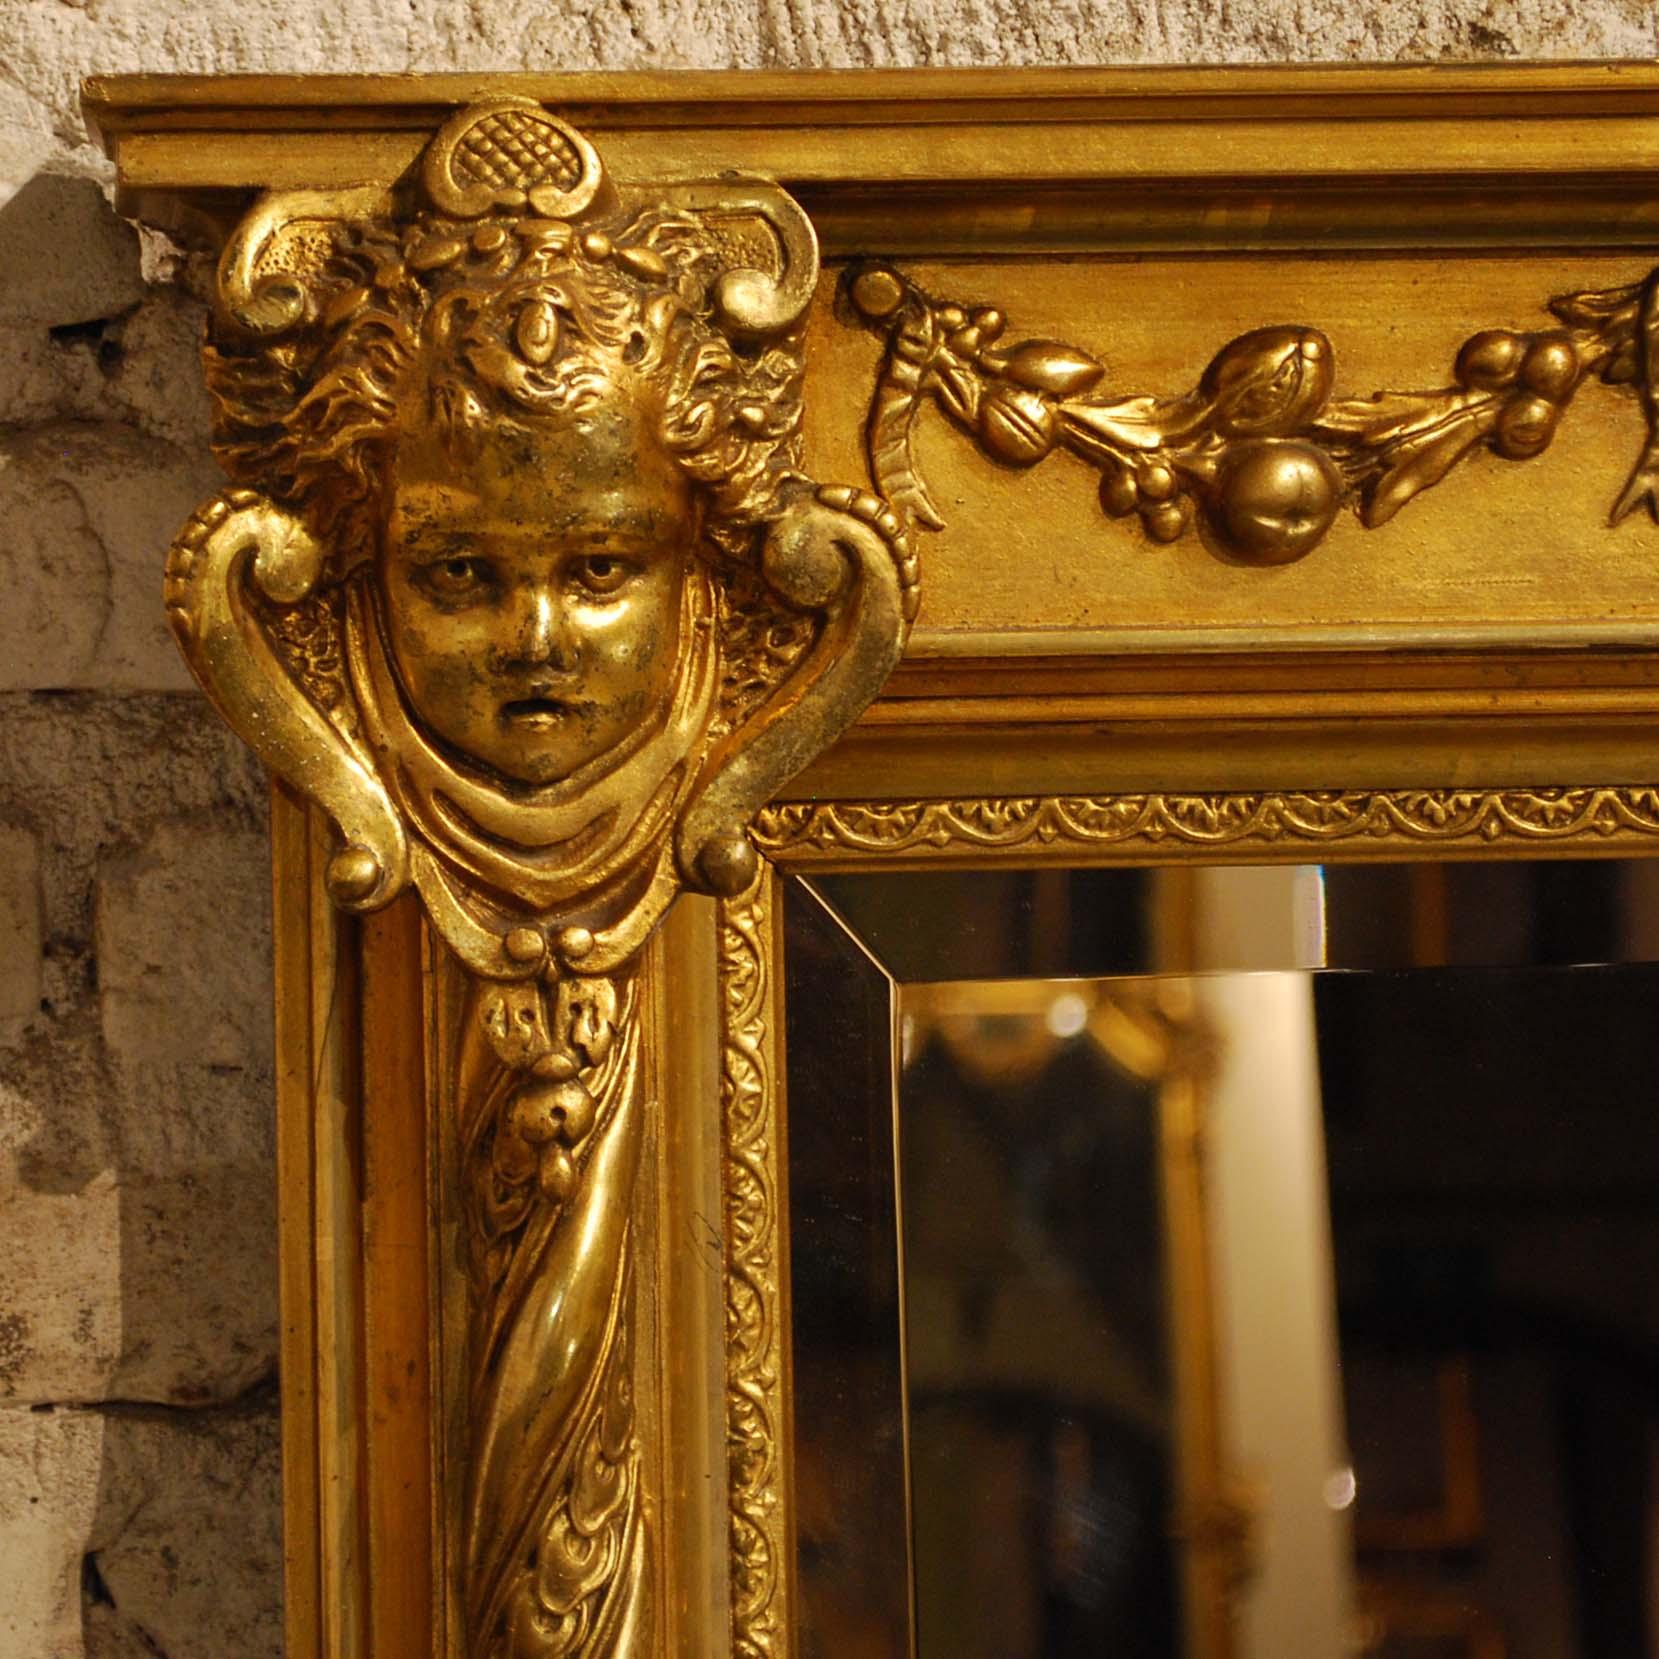 Gesso Antique 19th Century French Renaissance Rectangular Mirror with Cherubs